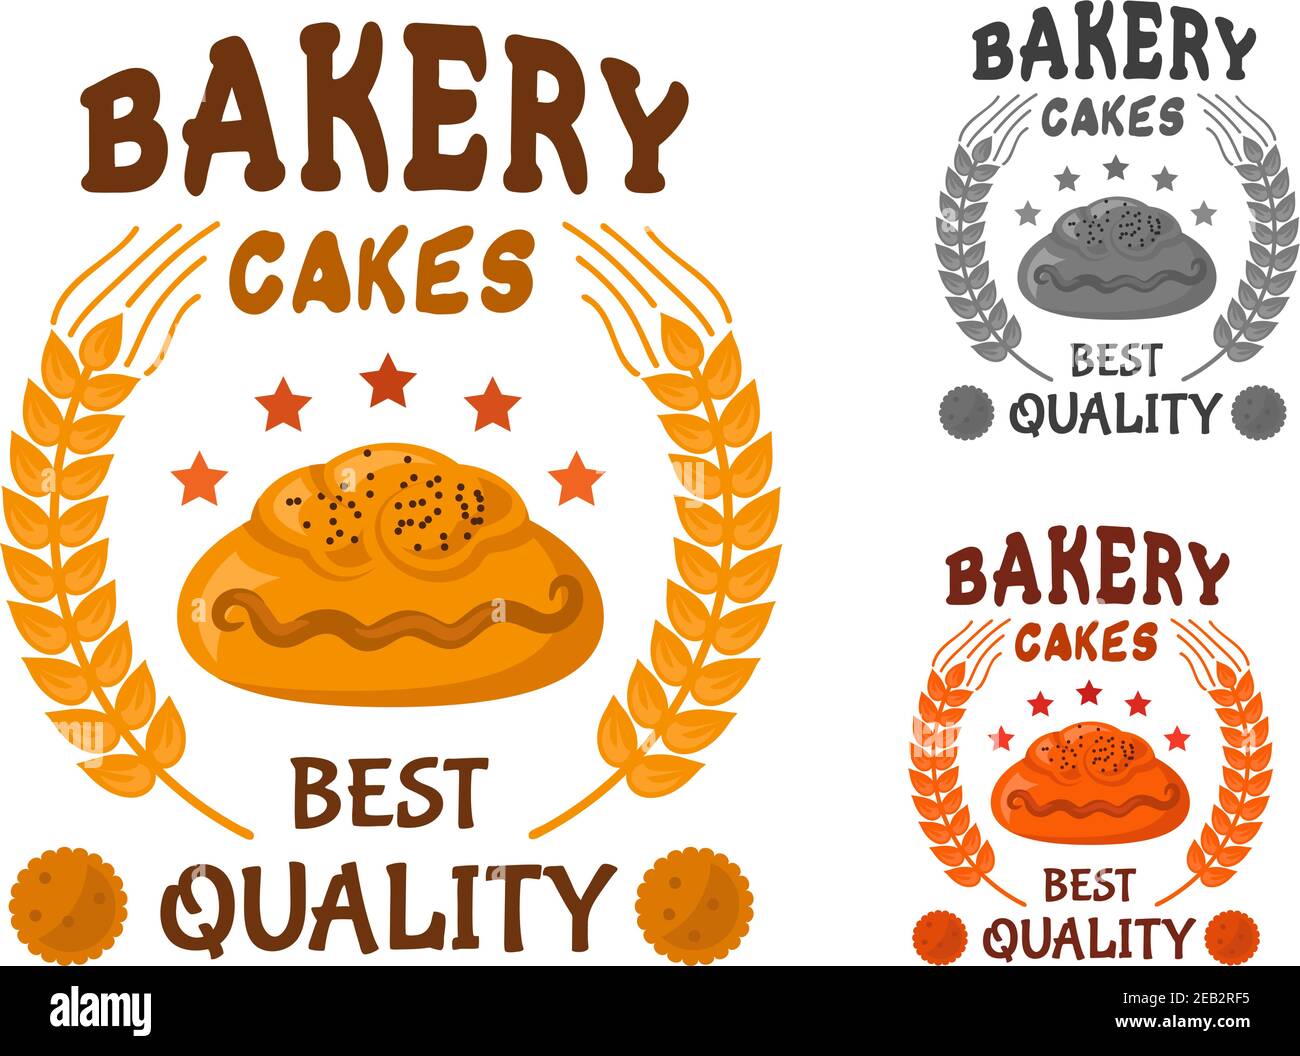 Backwaren-Kuchen-Ikone des Bun mit Mohn, umgeben von Sternen, Weizenohren und Kopfbesatz Beste Qualität mit Cookies auf beiden Seiten Stock Vektor